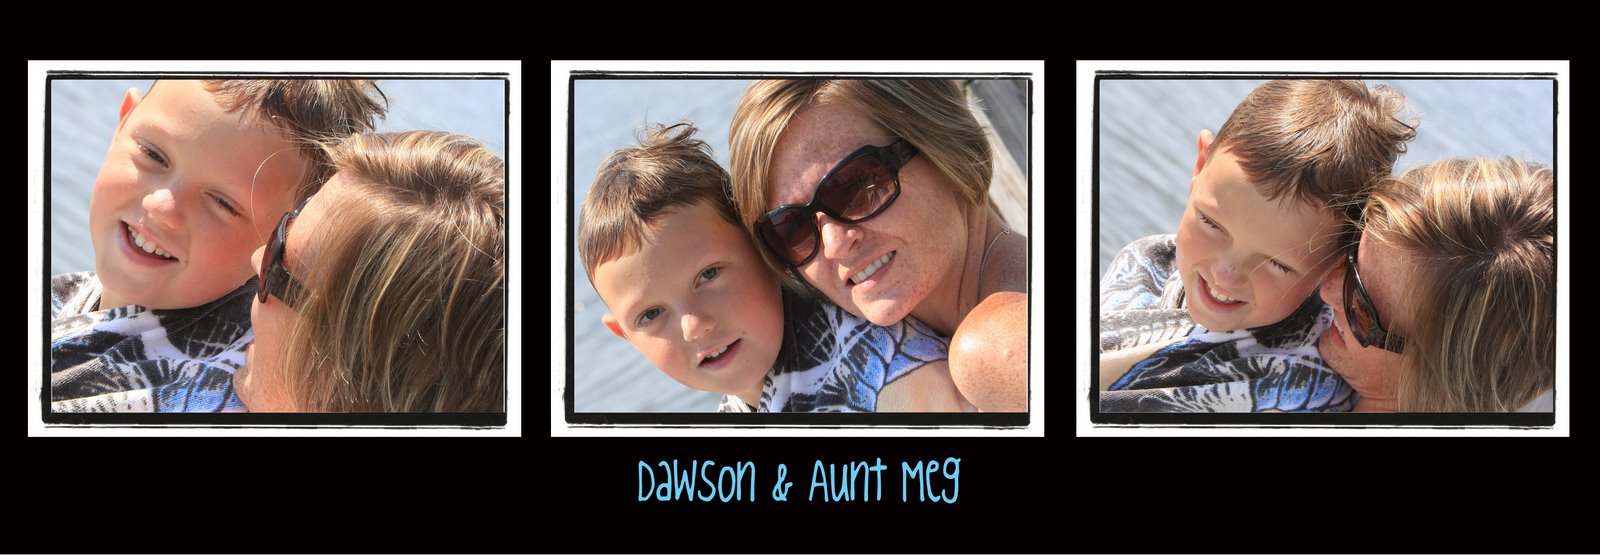 [Dawson&Aunt+Meg+copy.jpg]